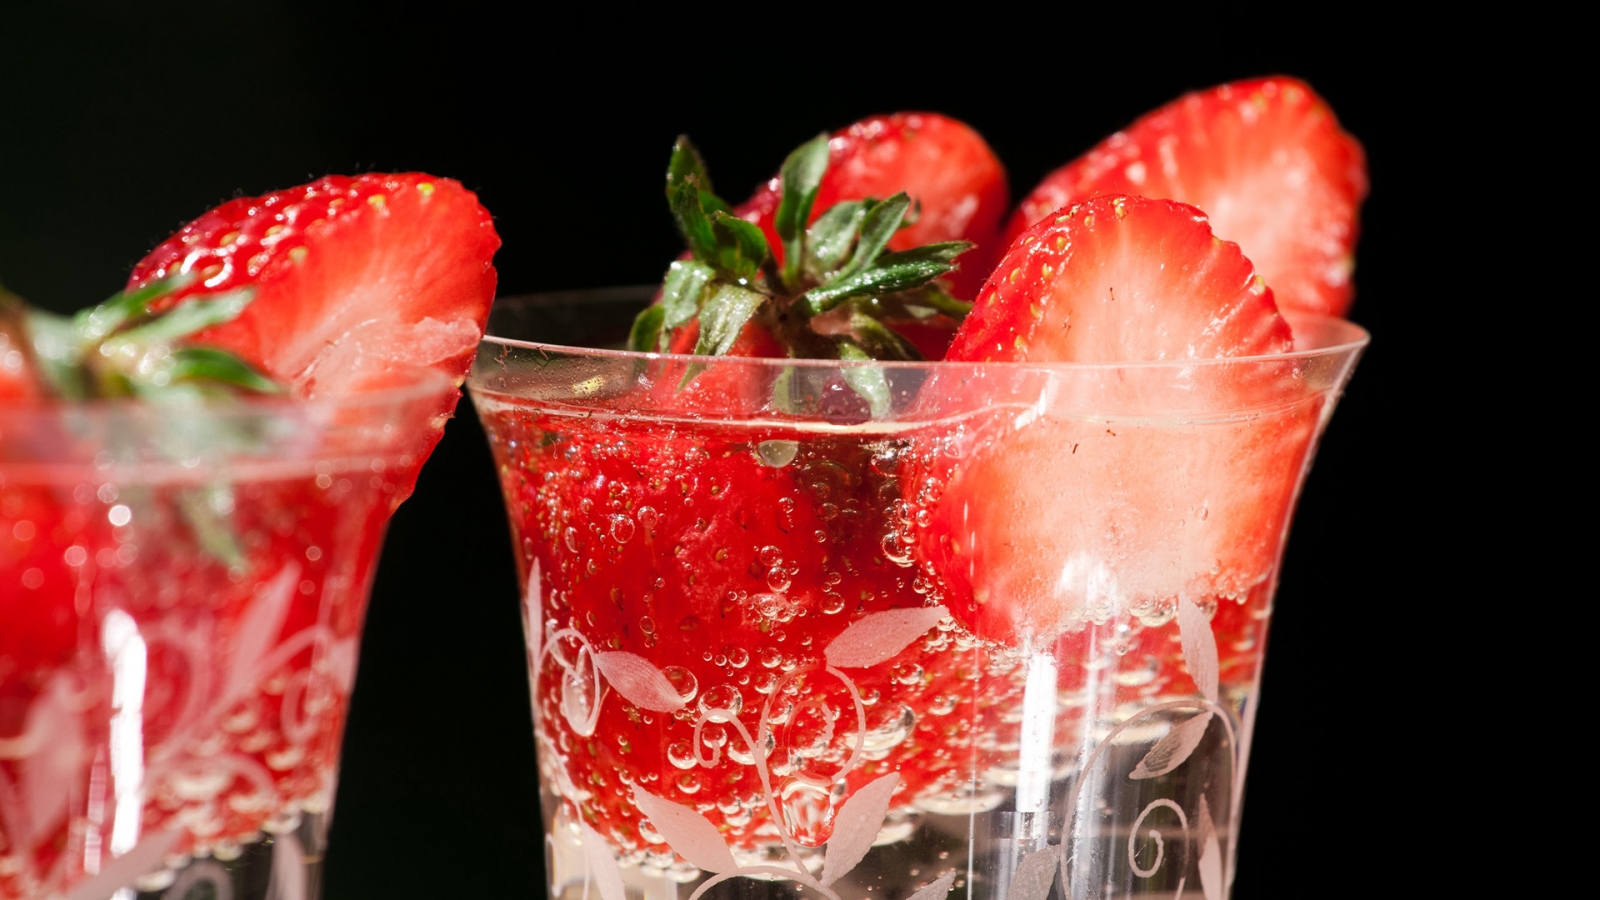 Fresh strawberries in glasses for 1600 x 900 HDTV resolution